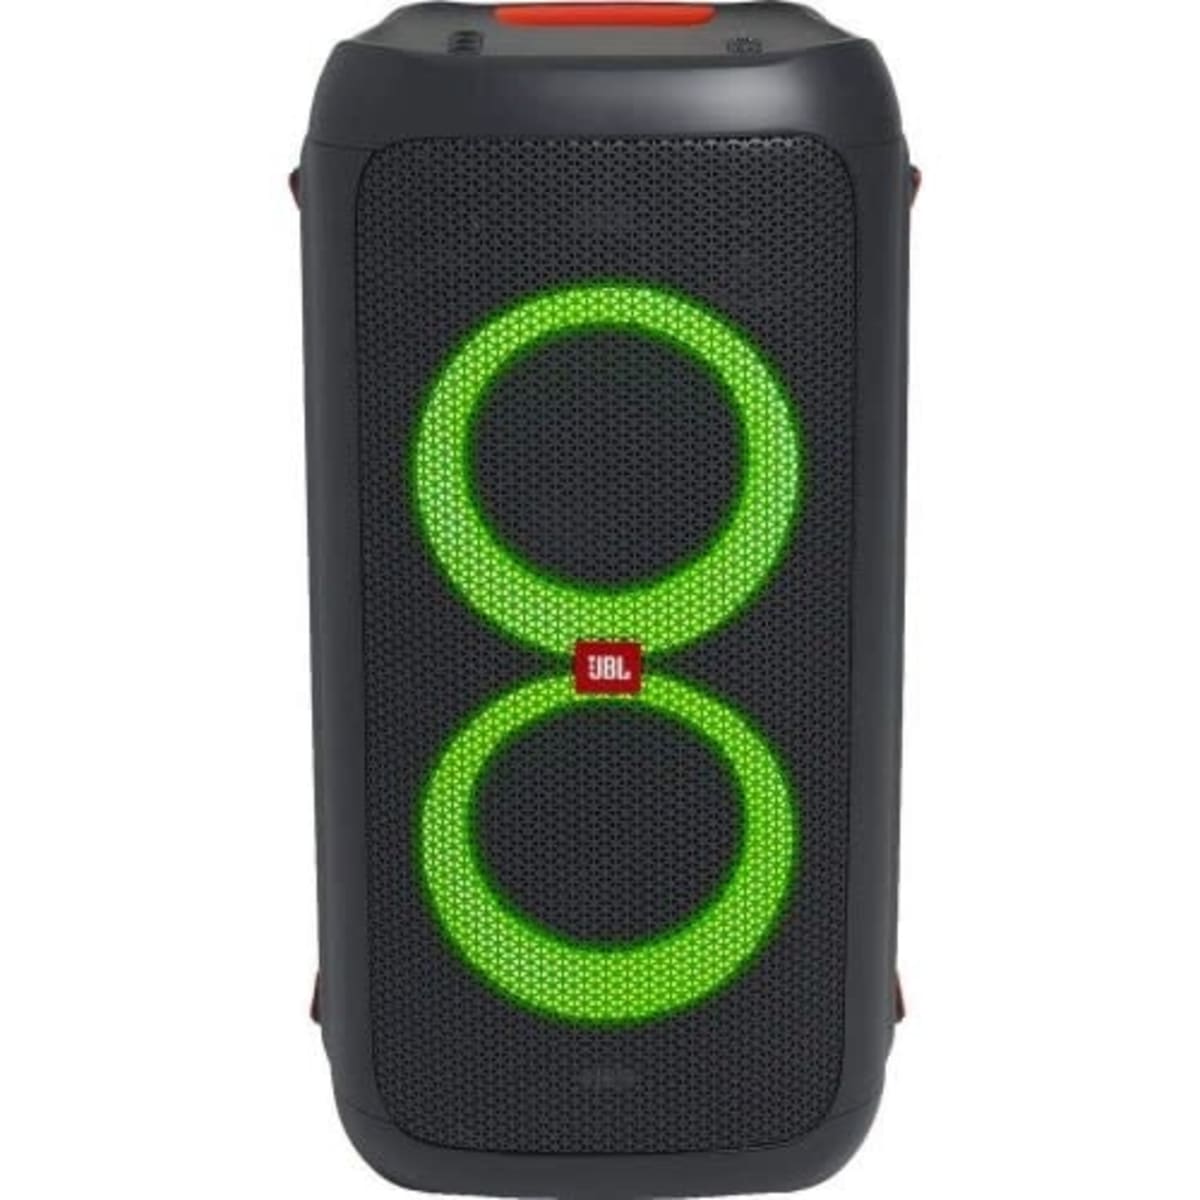 JBL PartyBox 110 160W Portable Wireless Speaker